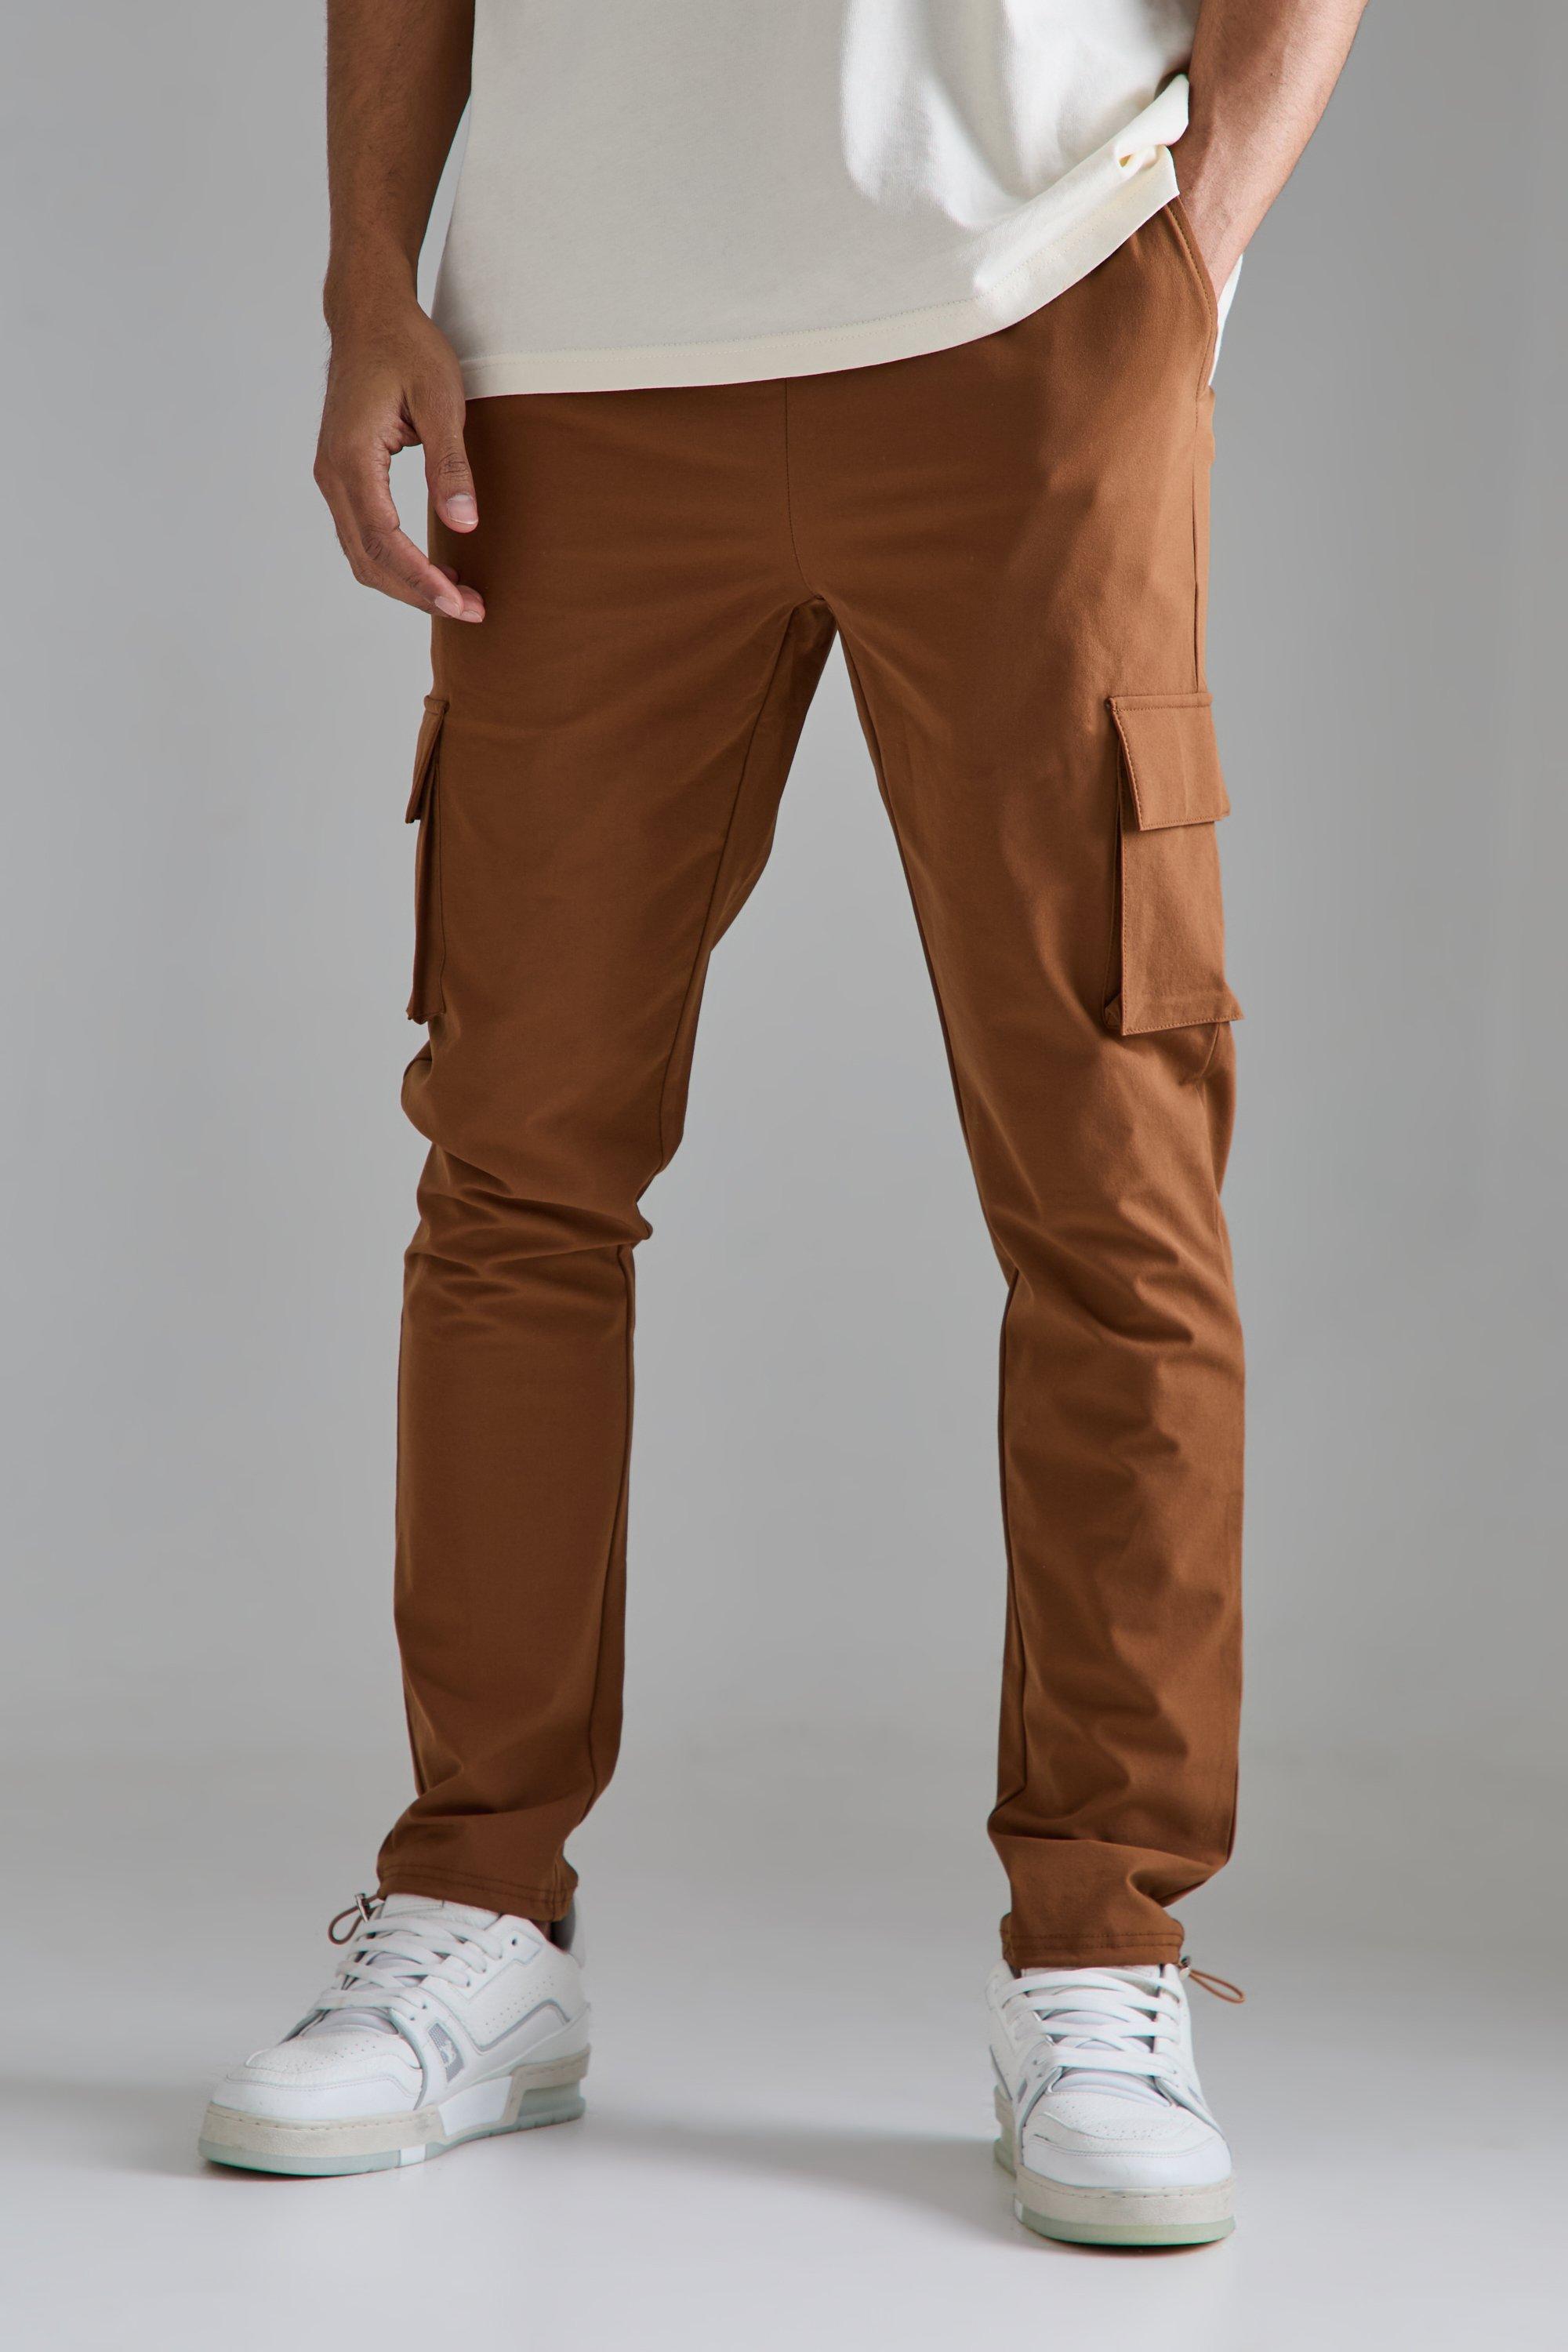 Image of Pantaloni Cargo Skinny Fit in Stretch tecnico leggero elasticizzato, Brown